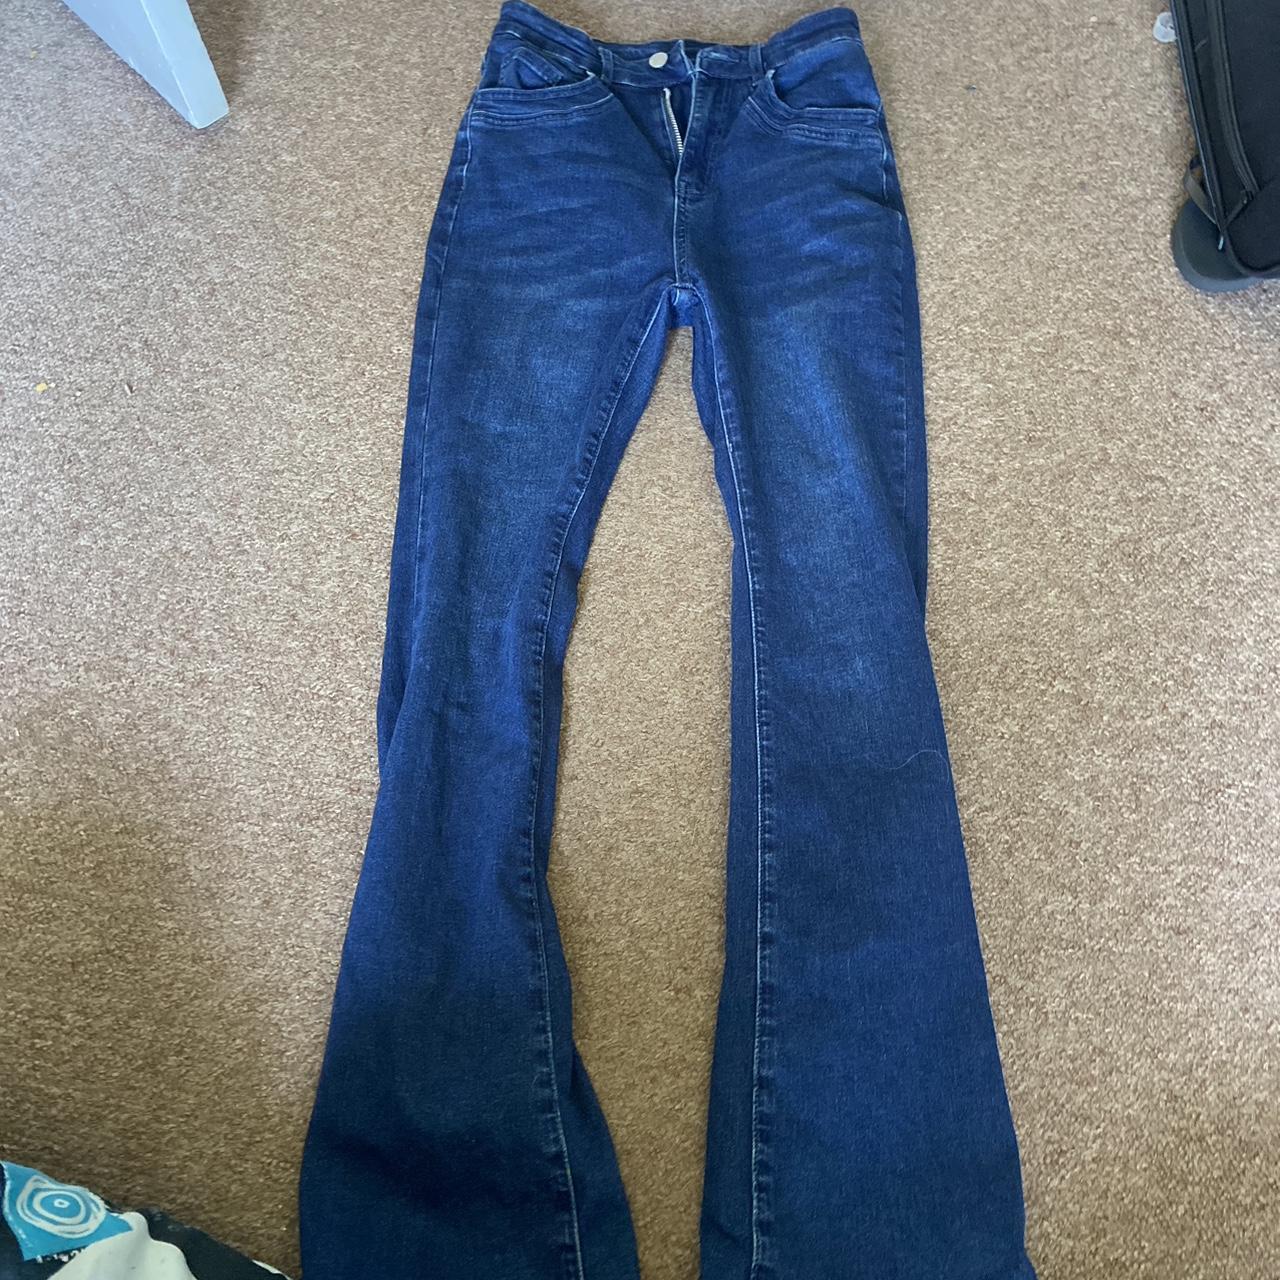 blue flare denim jeans worn twoce - Depop